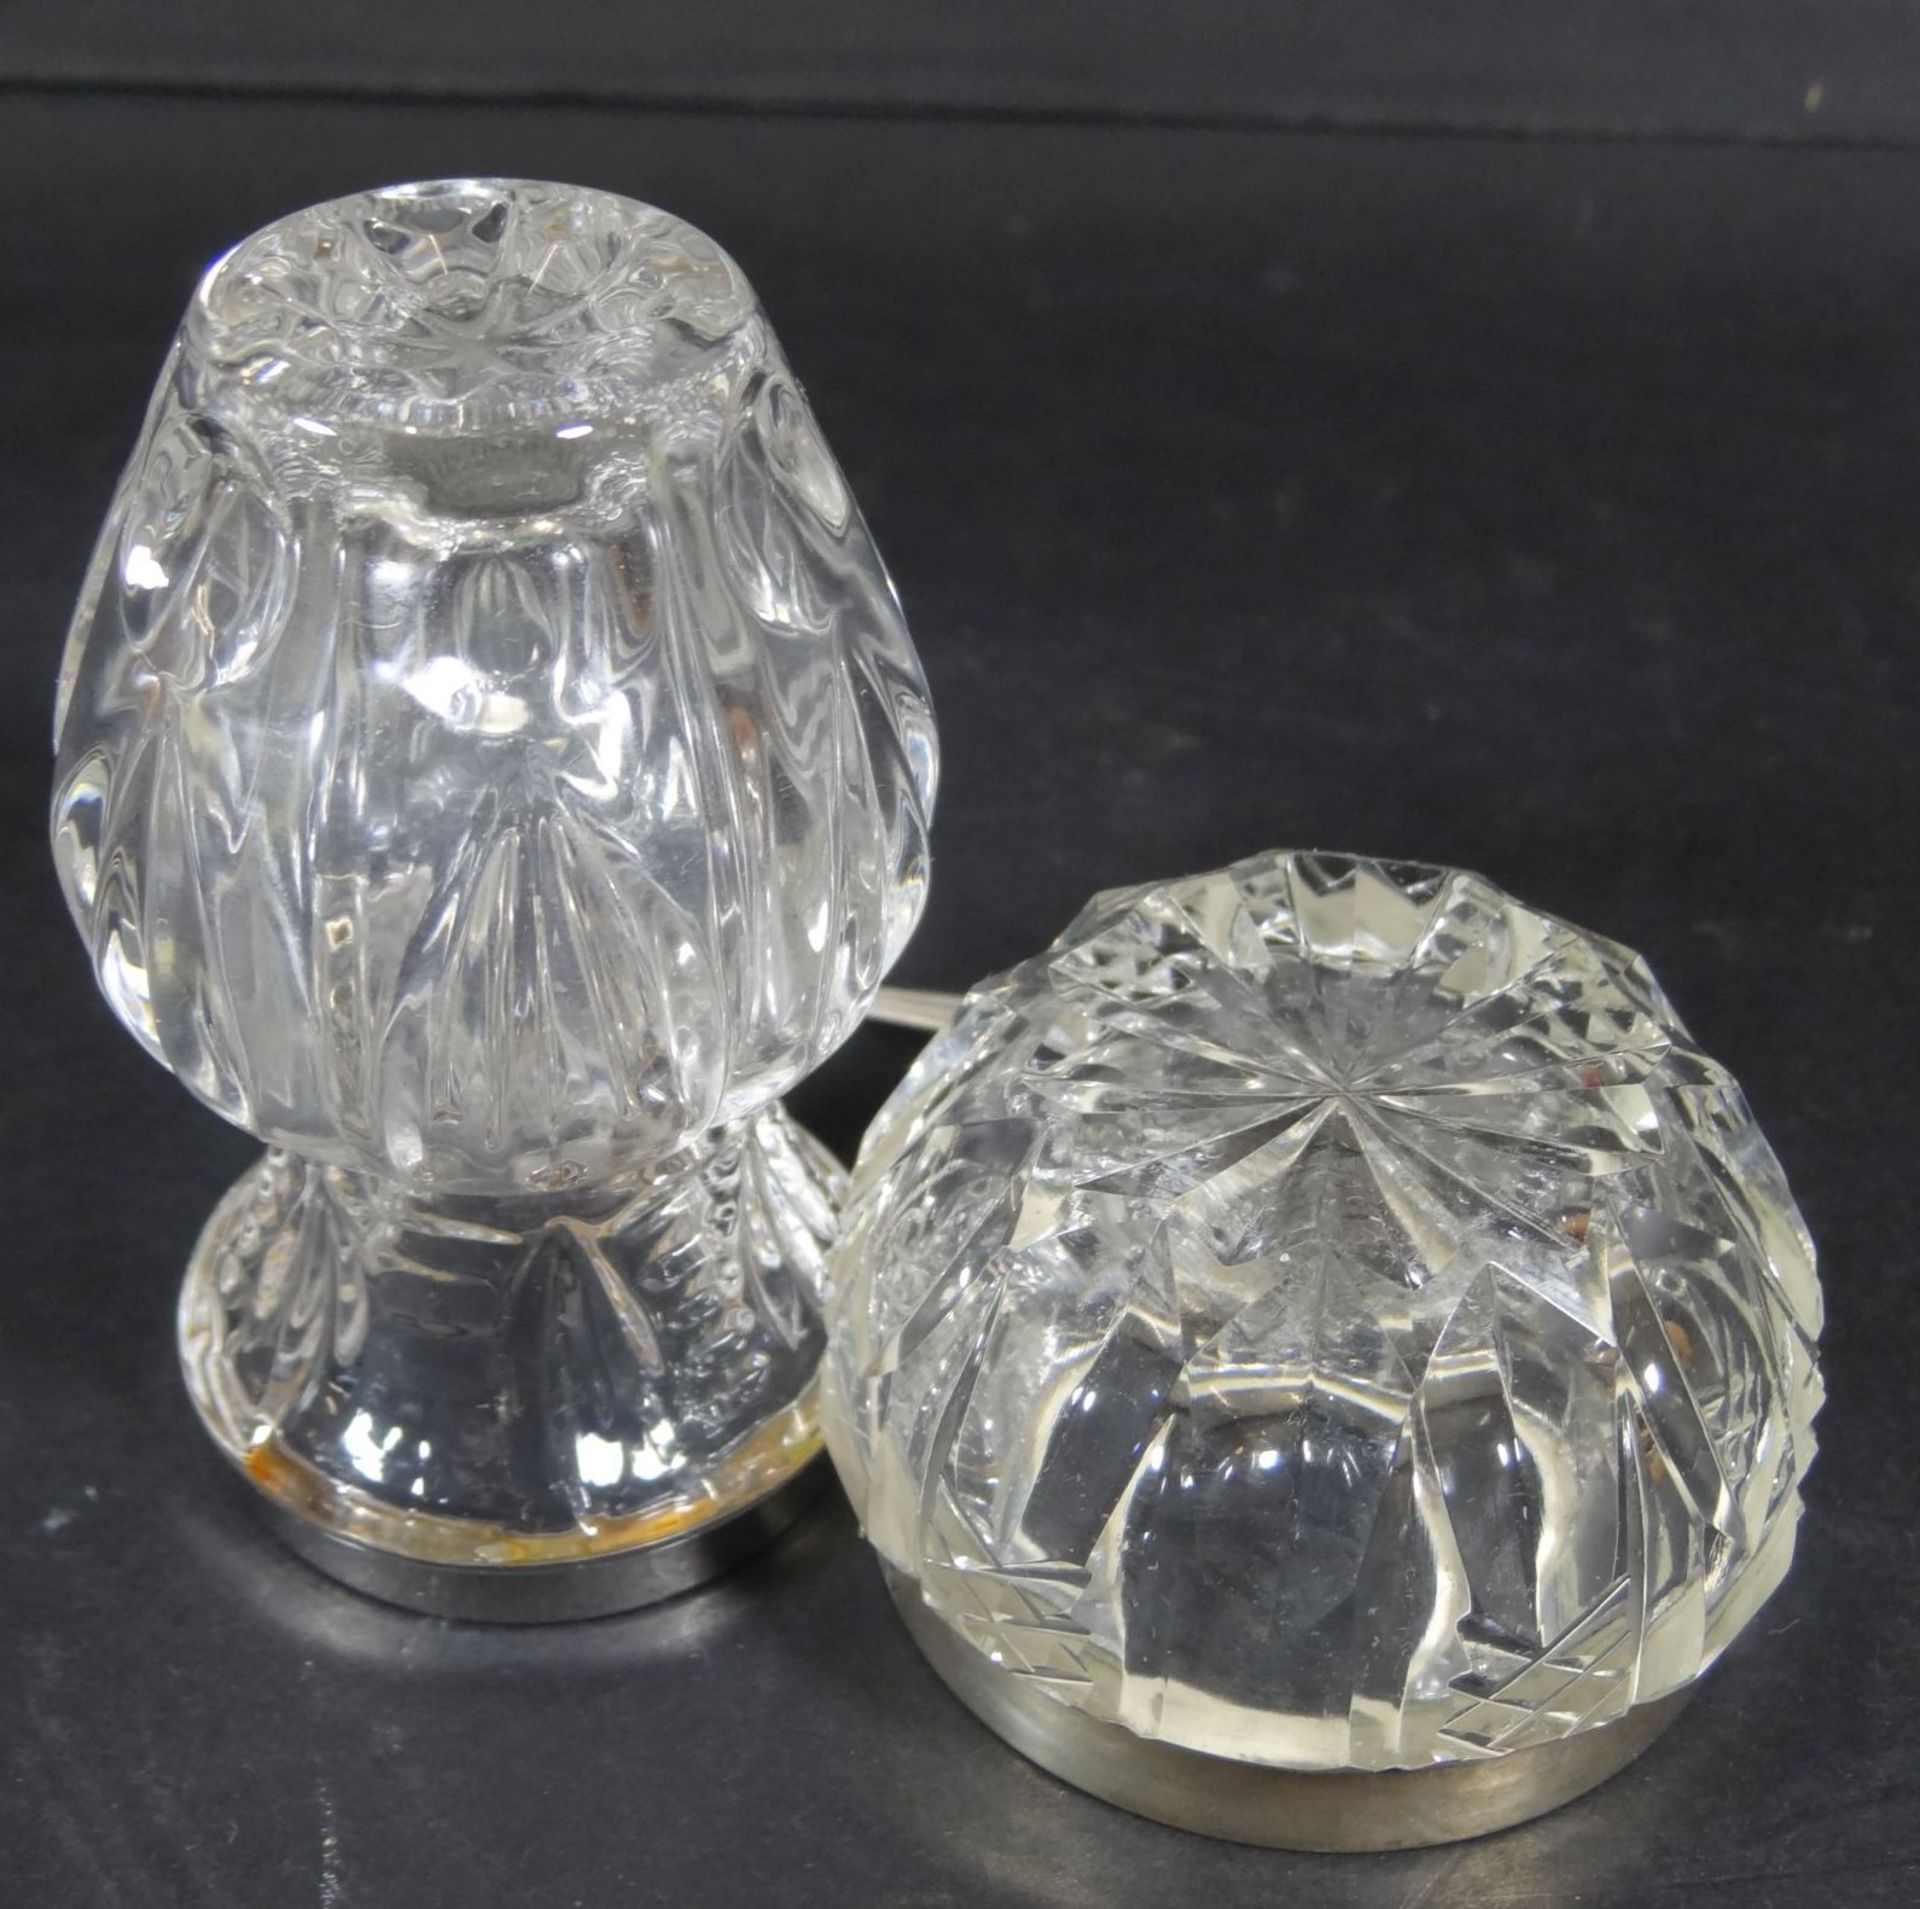 kl. Gewürzschälchen mit Silberlöffel, kl. Vase mit Silberrand-800-, H-3.5 und 7,5- - -22.61 % - Bild 3 aus 6